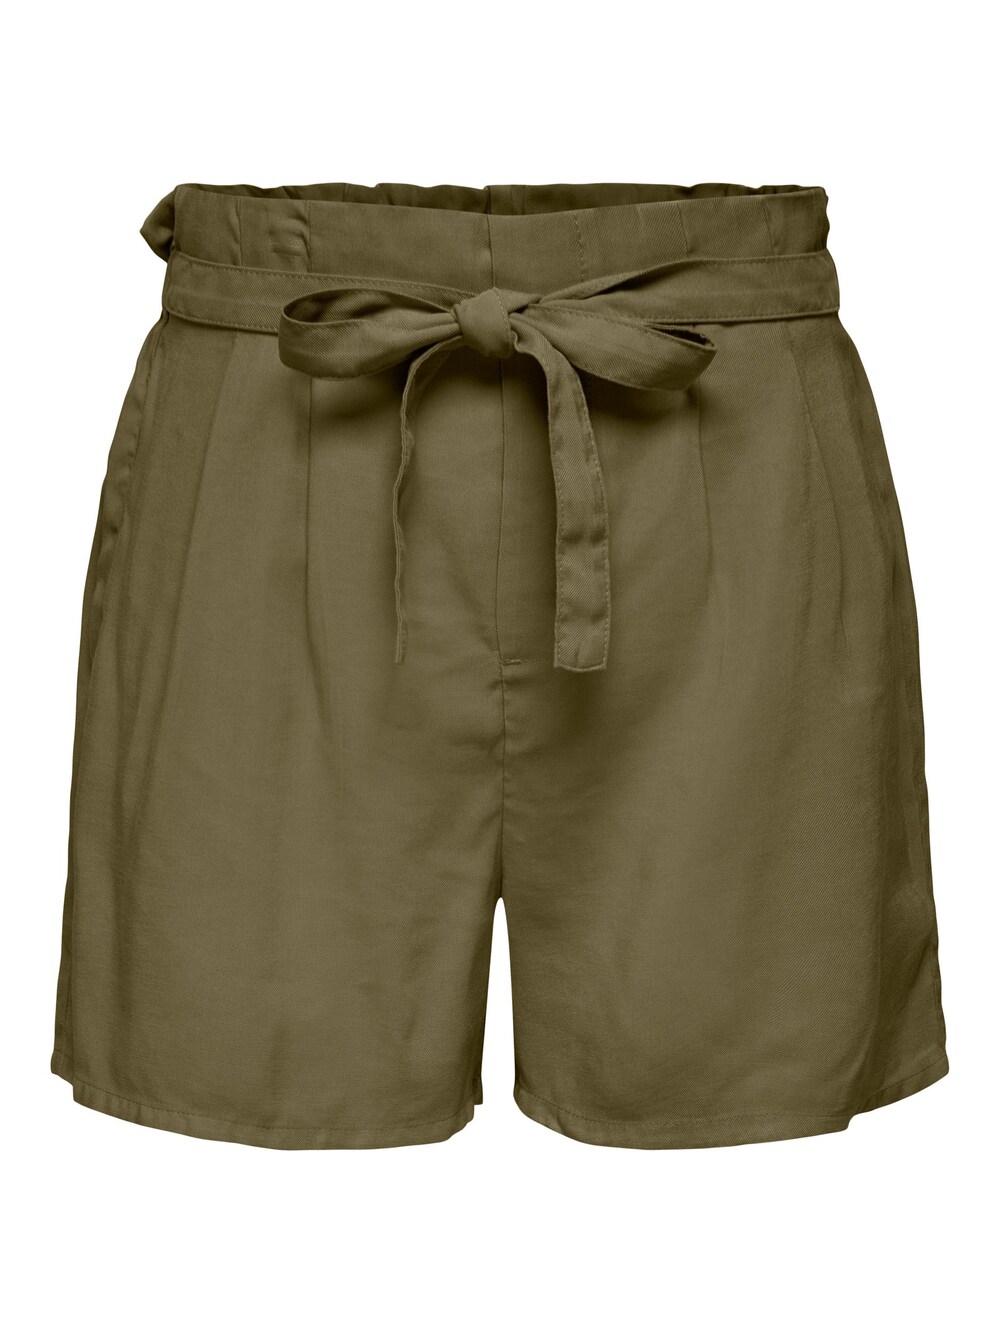 Обычные брюки со складками спереди ONLY ARIS LIFE, оливковый